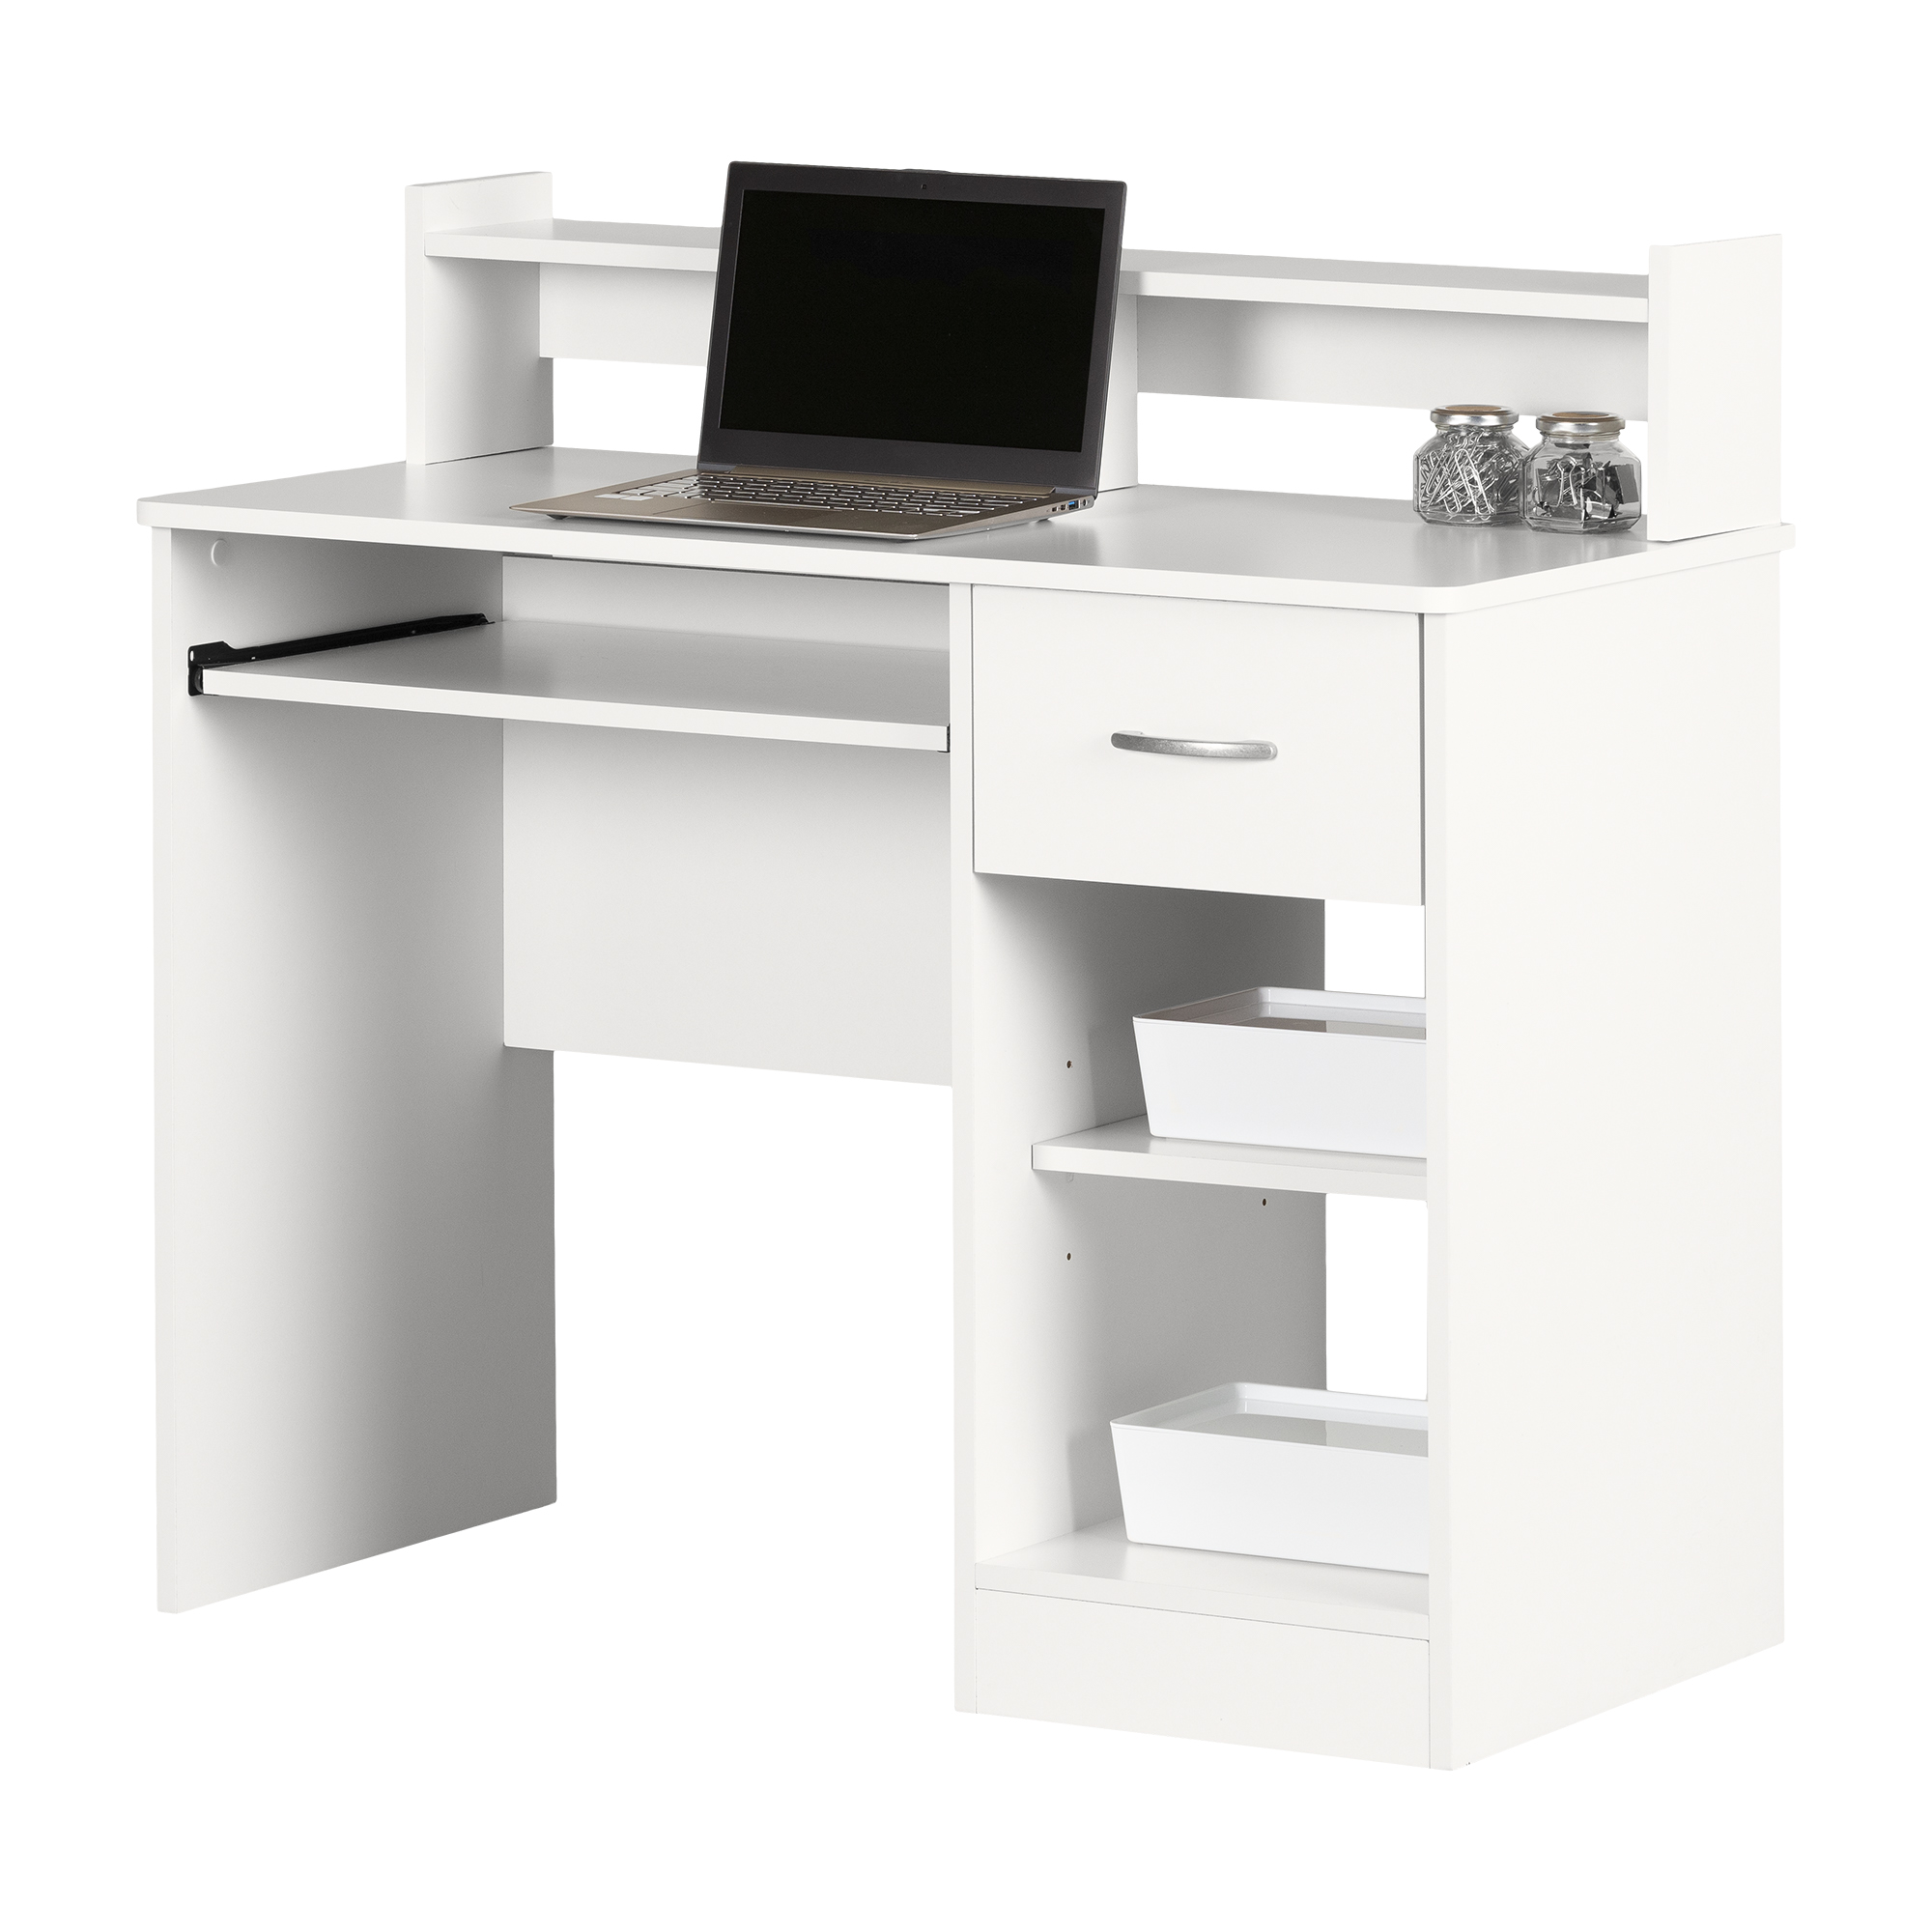 South Shore Axess, Contemporary Desk, Medium Desk White - image 2 of 16